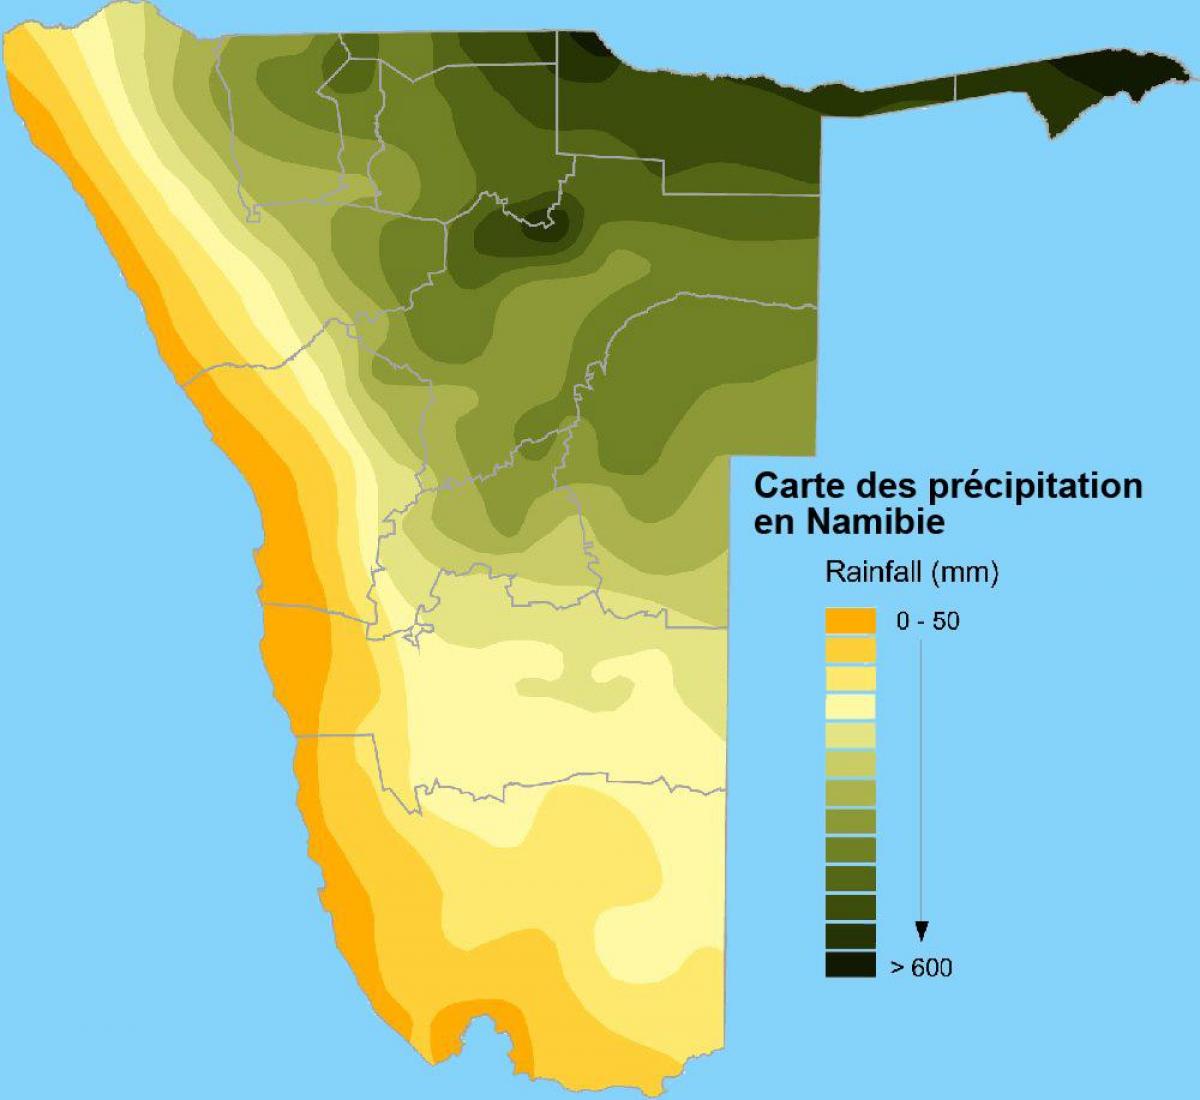 Karte von Namibia Niederschlag